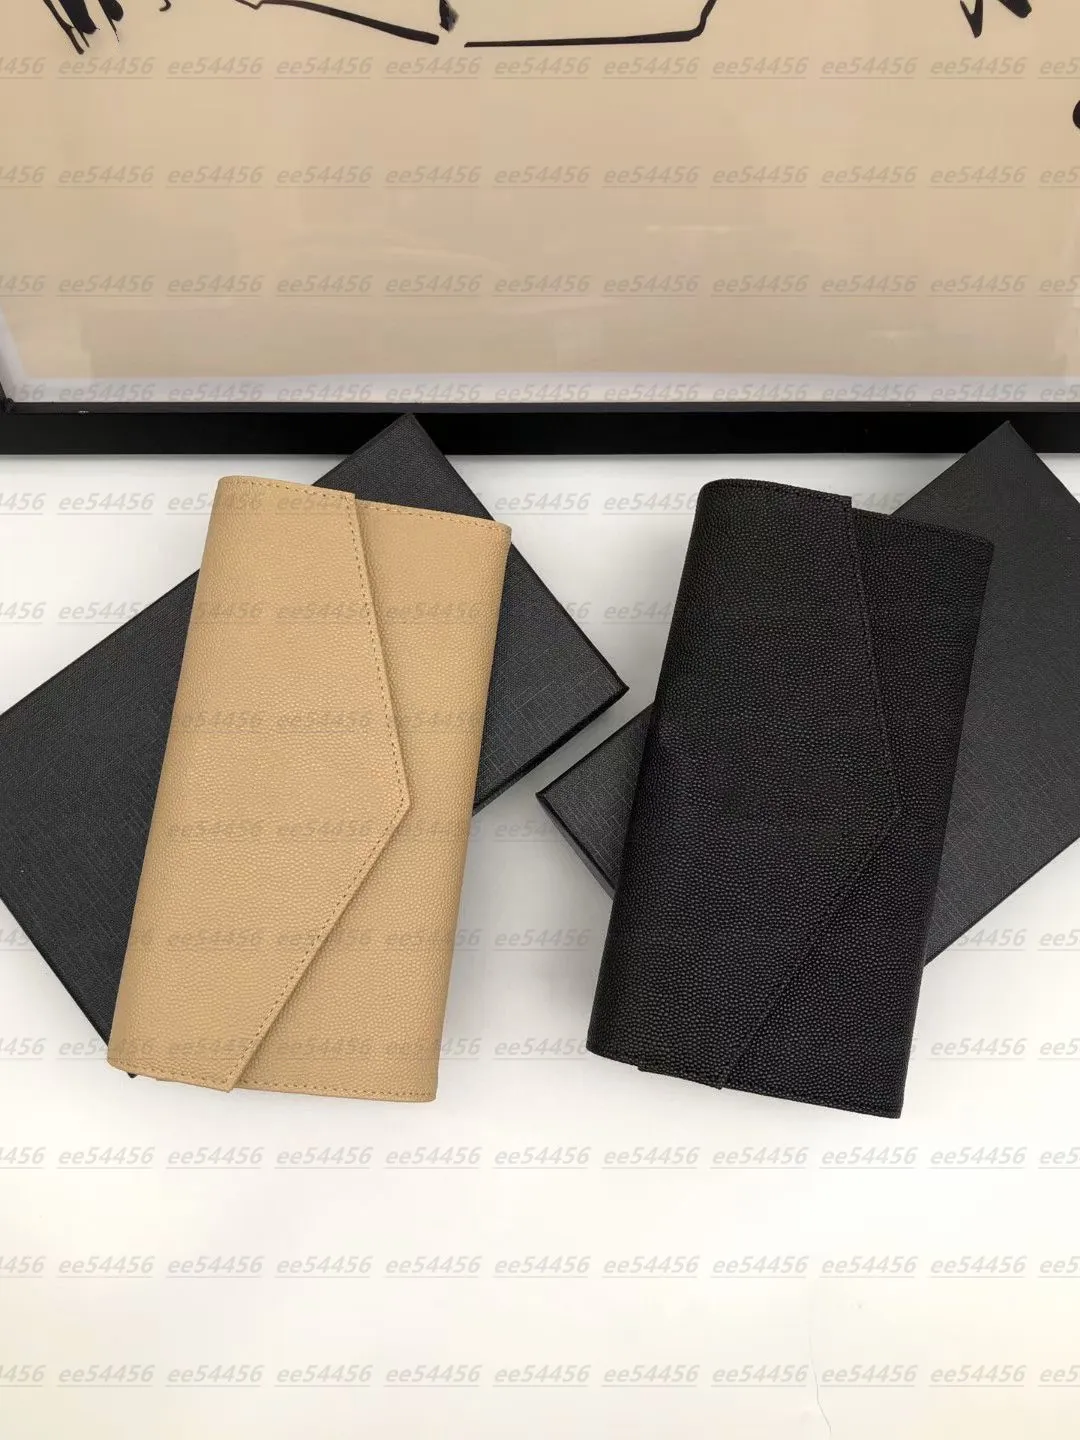 Высочайшее качество Подлинная мини кошелек кошельки кожаные сумки роскоши дизайнеры мода сумка мужчины женские монеты карты Foums черный длинный ампинчатый ключ карманный слот